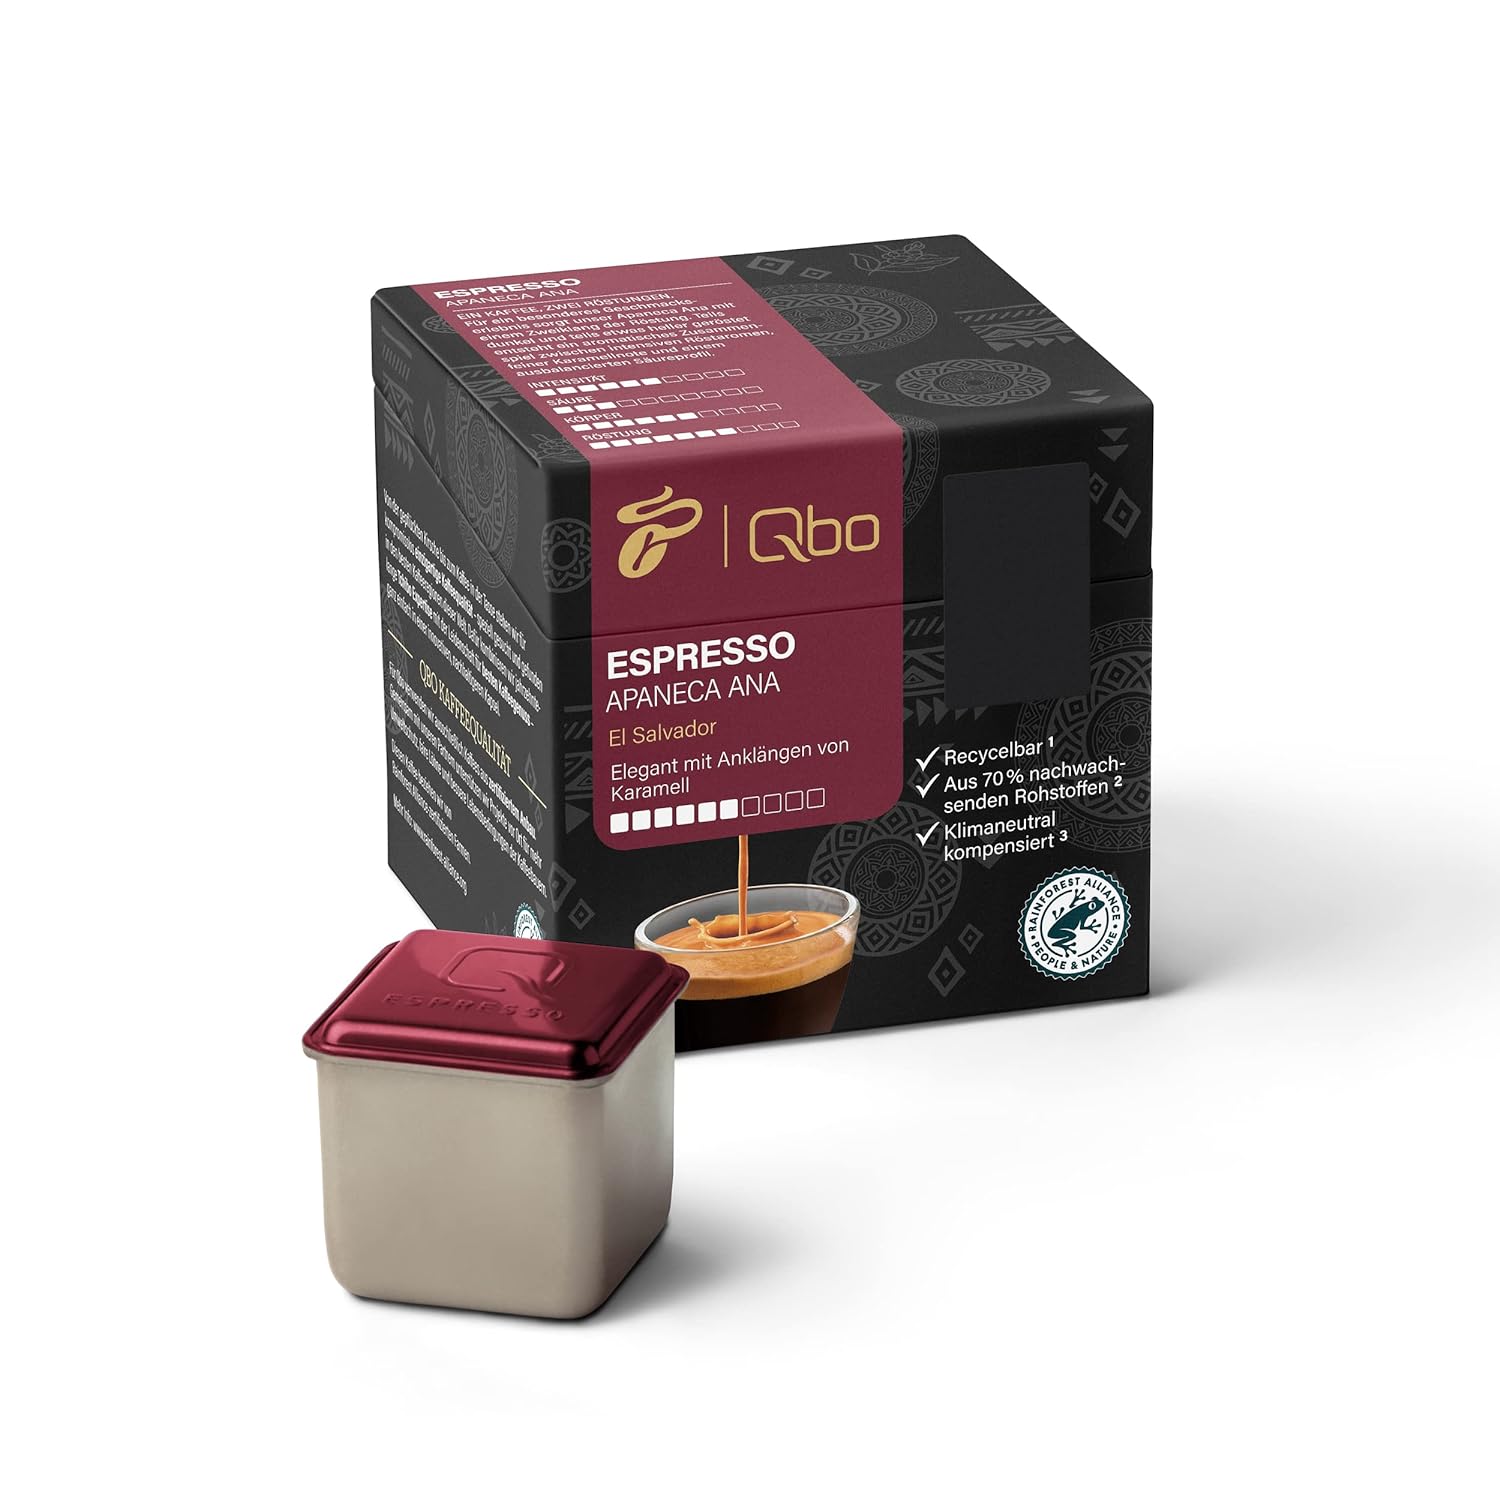 Tchibo Qbo Espresso Apaneca Ana Premium Kaffeekapseln, 144 Stück - 18x8 Kapseln (Espresso, Intensität 5/10, elegant mit Karamellnote), nachhaltig, aus 70% nachwachsenden Rohstoffen